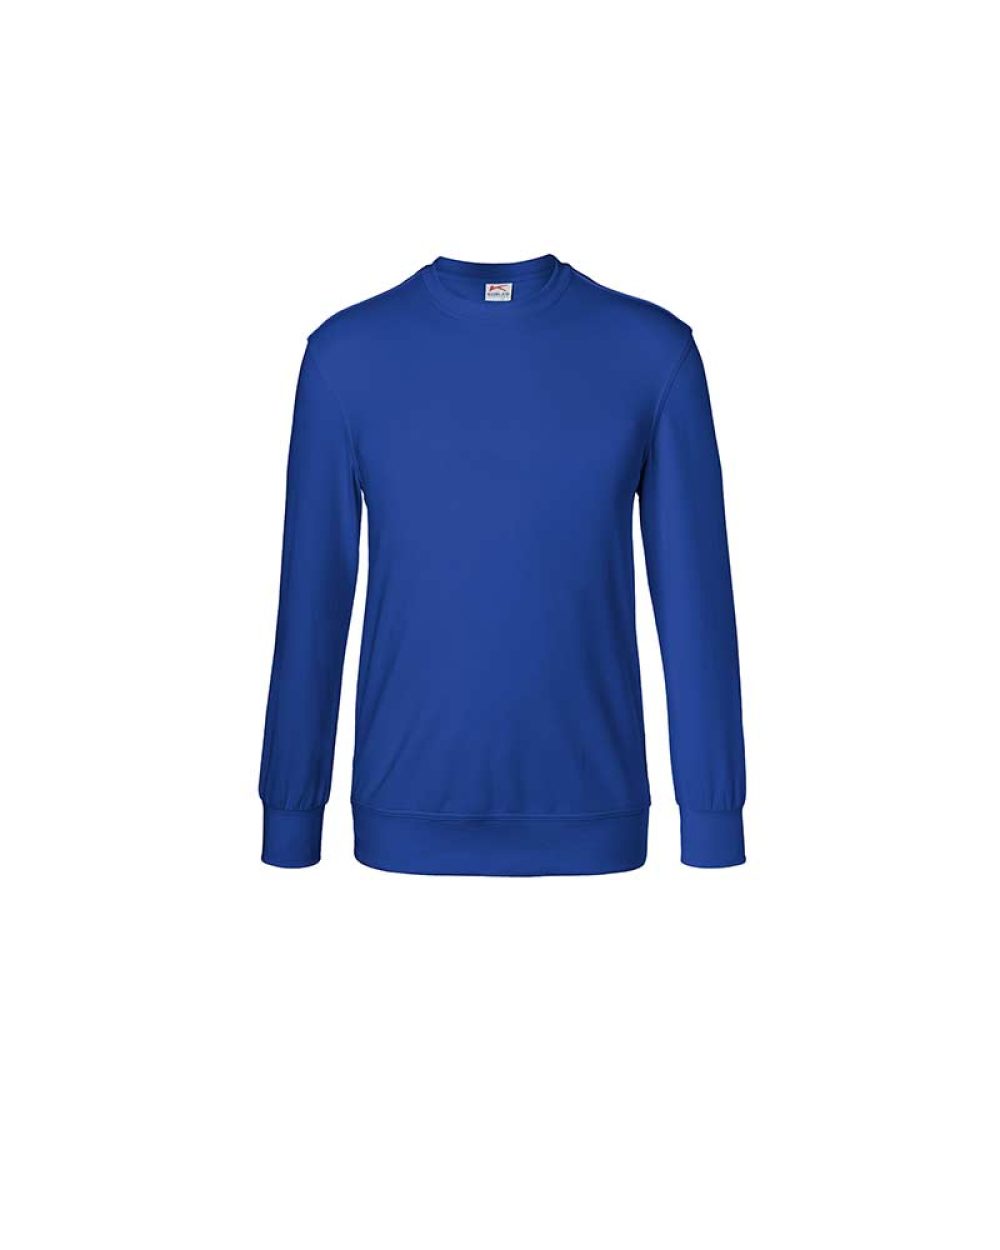 kuebler-sweatshirt-shirts-5023-6330-46